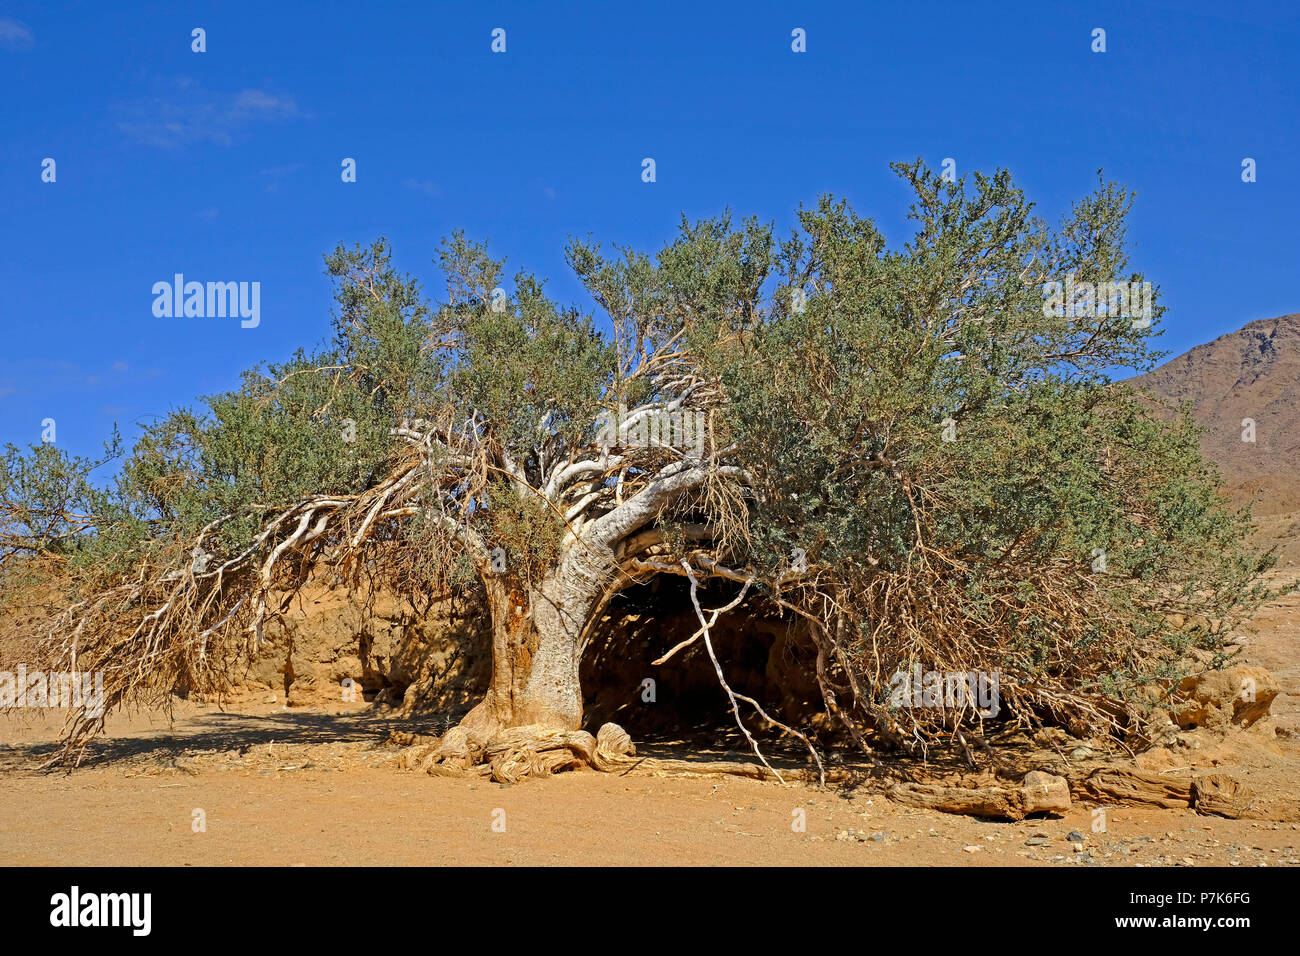 Alten, knorrigen Baum an der Felsenhöhle am sandigen Flussbett des Orange River/Oranjerivier (Grenzfluss) im Richtersveld, Namaqua, Südafrika Stockfoto